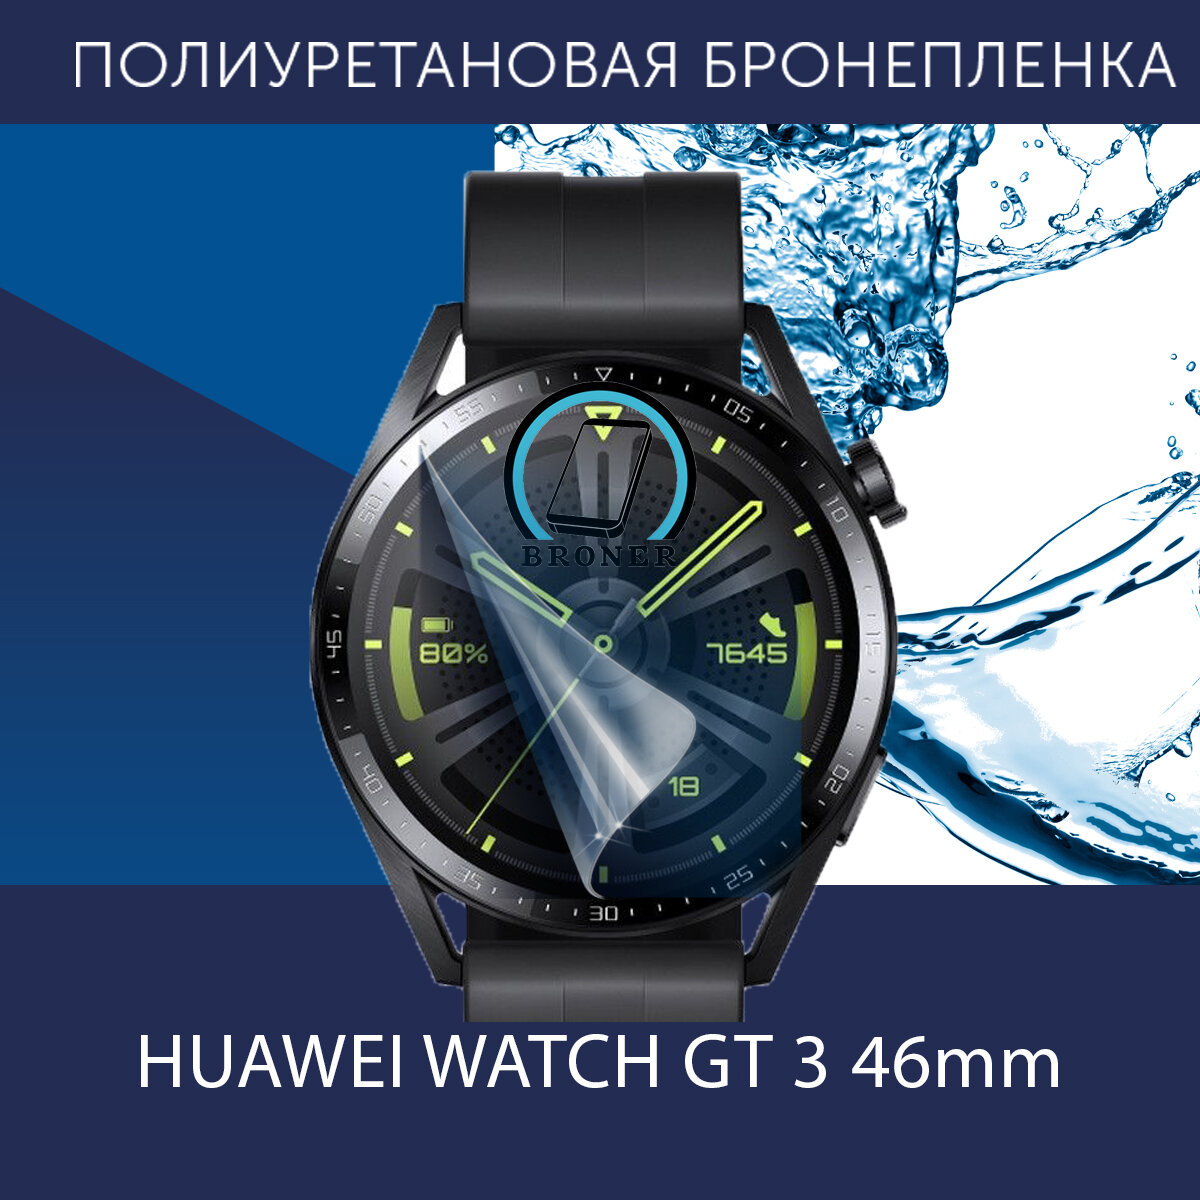 Полиуретановая бронепленка для смарт часов Huawei Watch GT 3 46 mm / Защитная пленка для Хуавей Вотч ГТ 3 46мм / Глянцевая